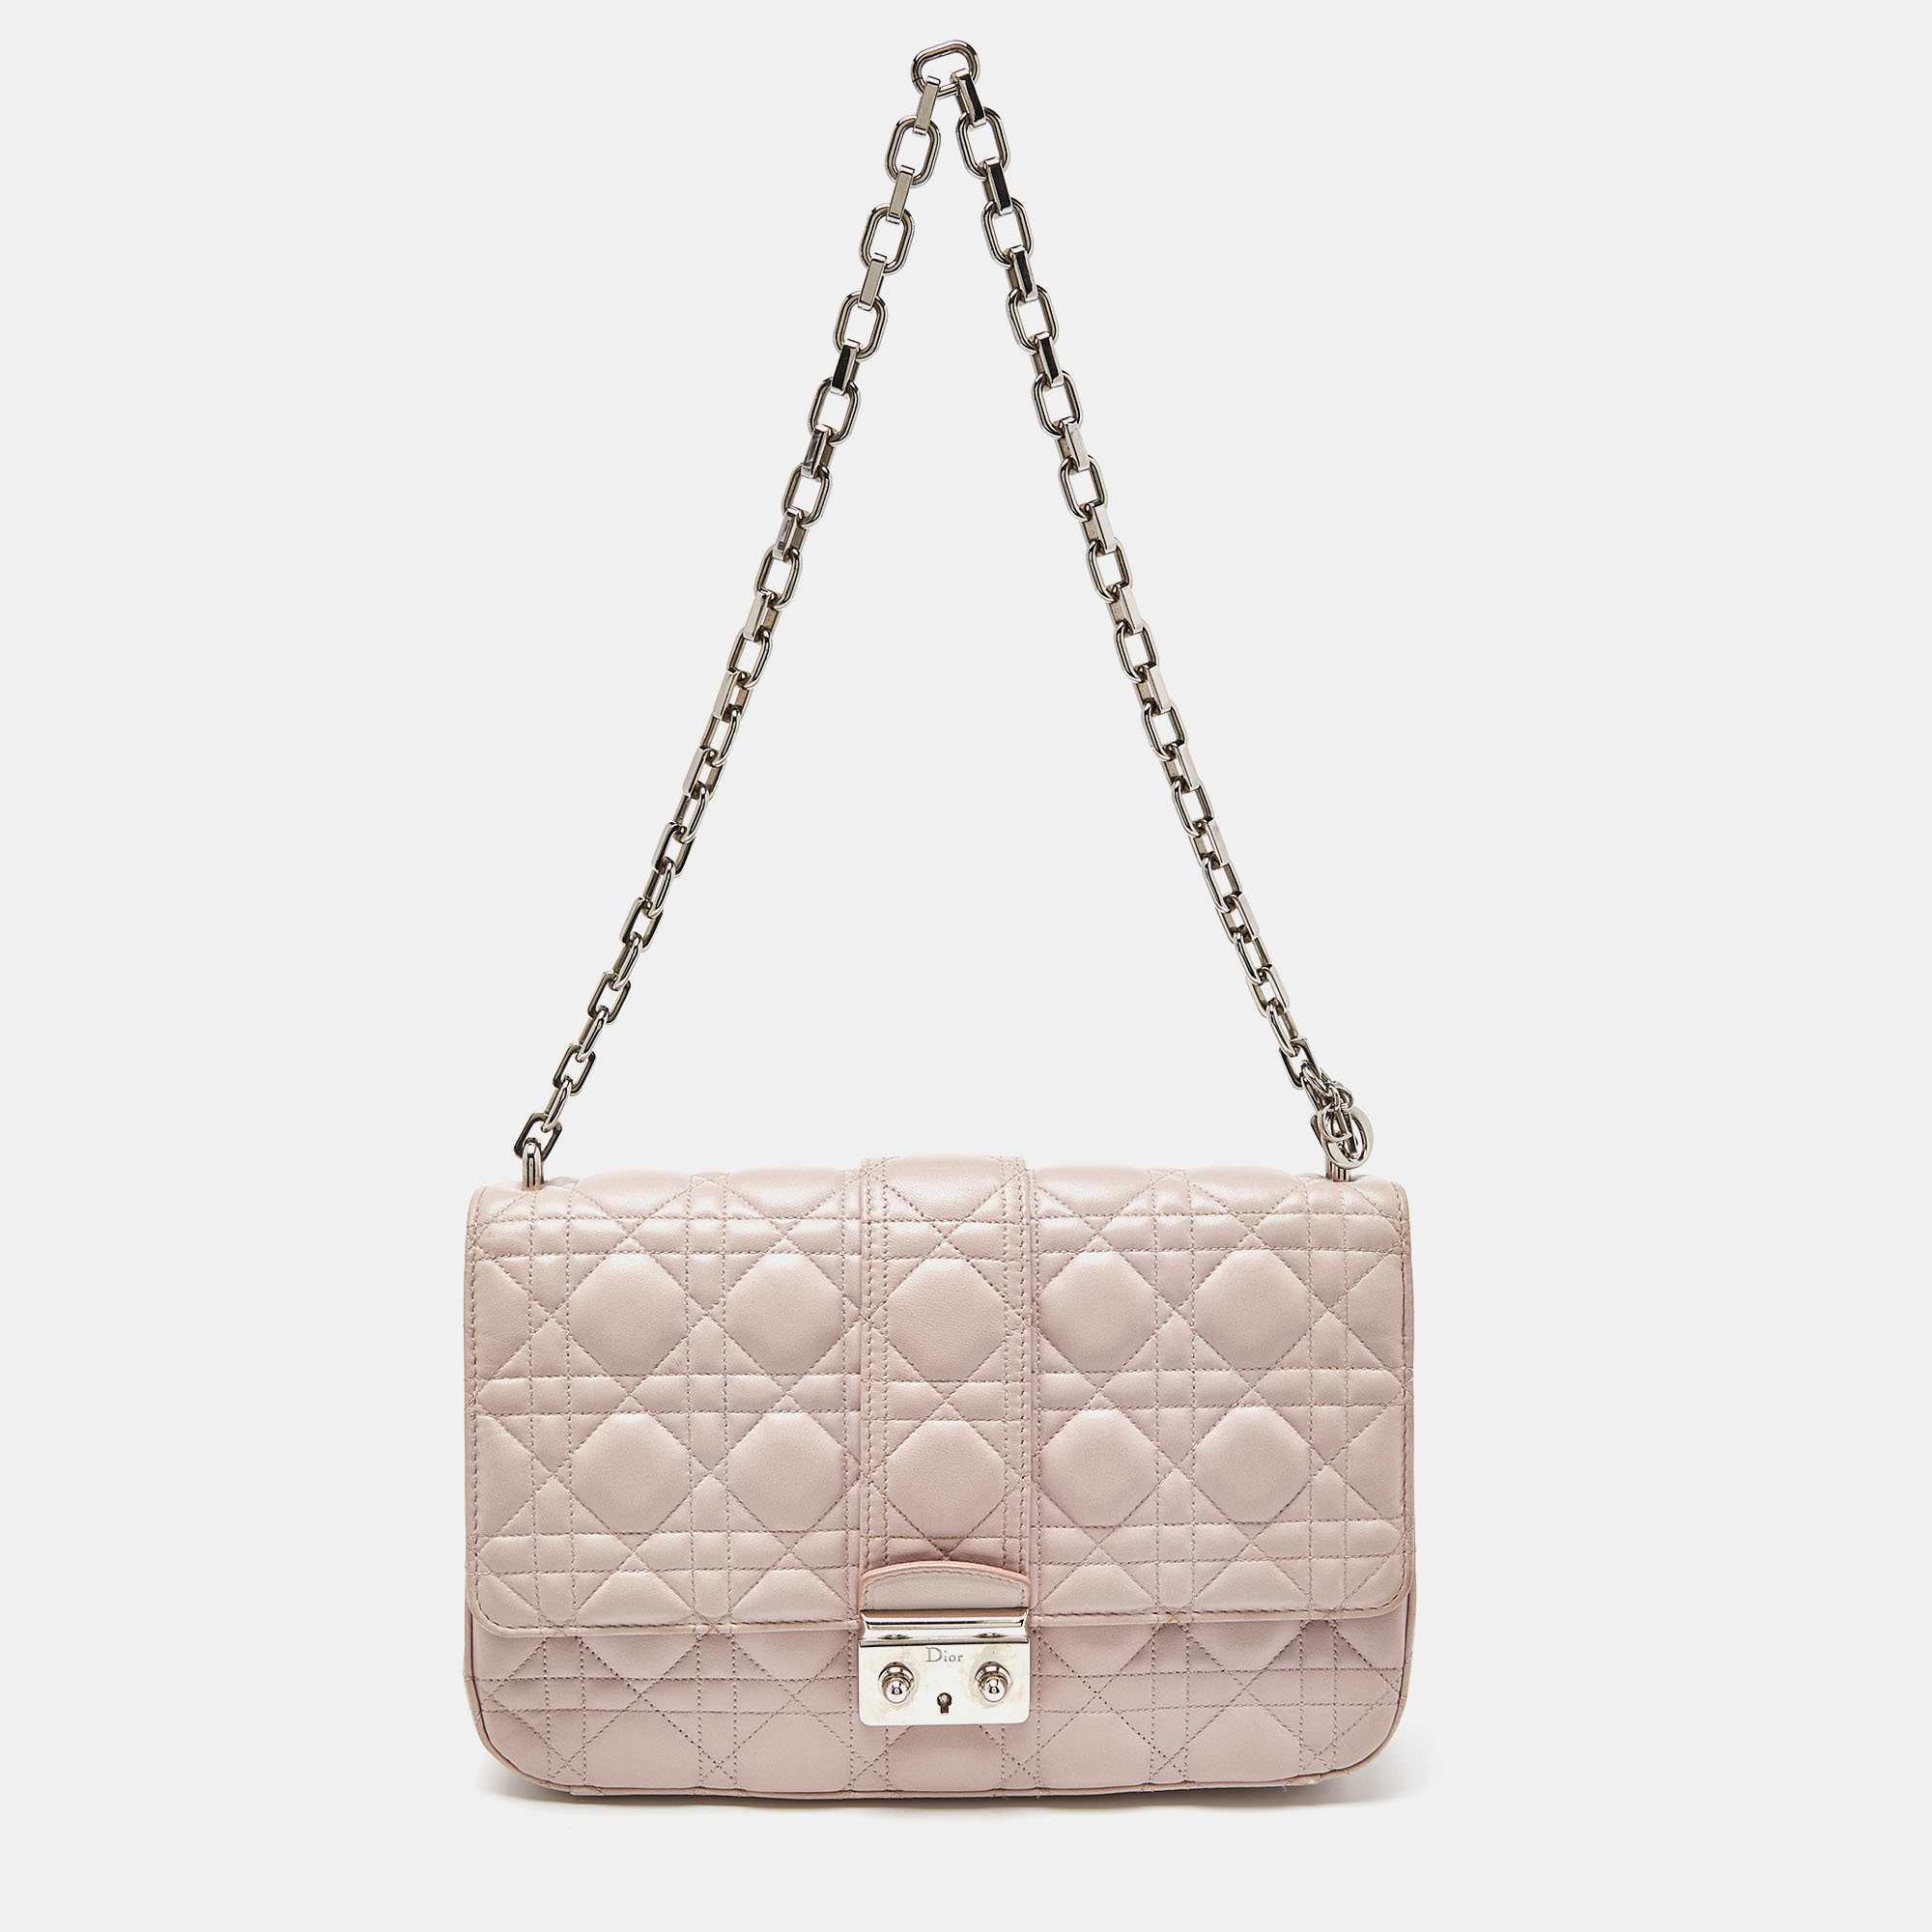 Dior Pink Cannage Leather Medium Miss Dior Shoulder Bag